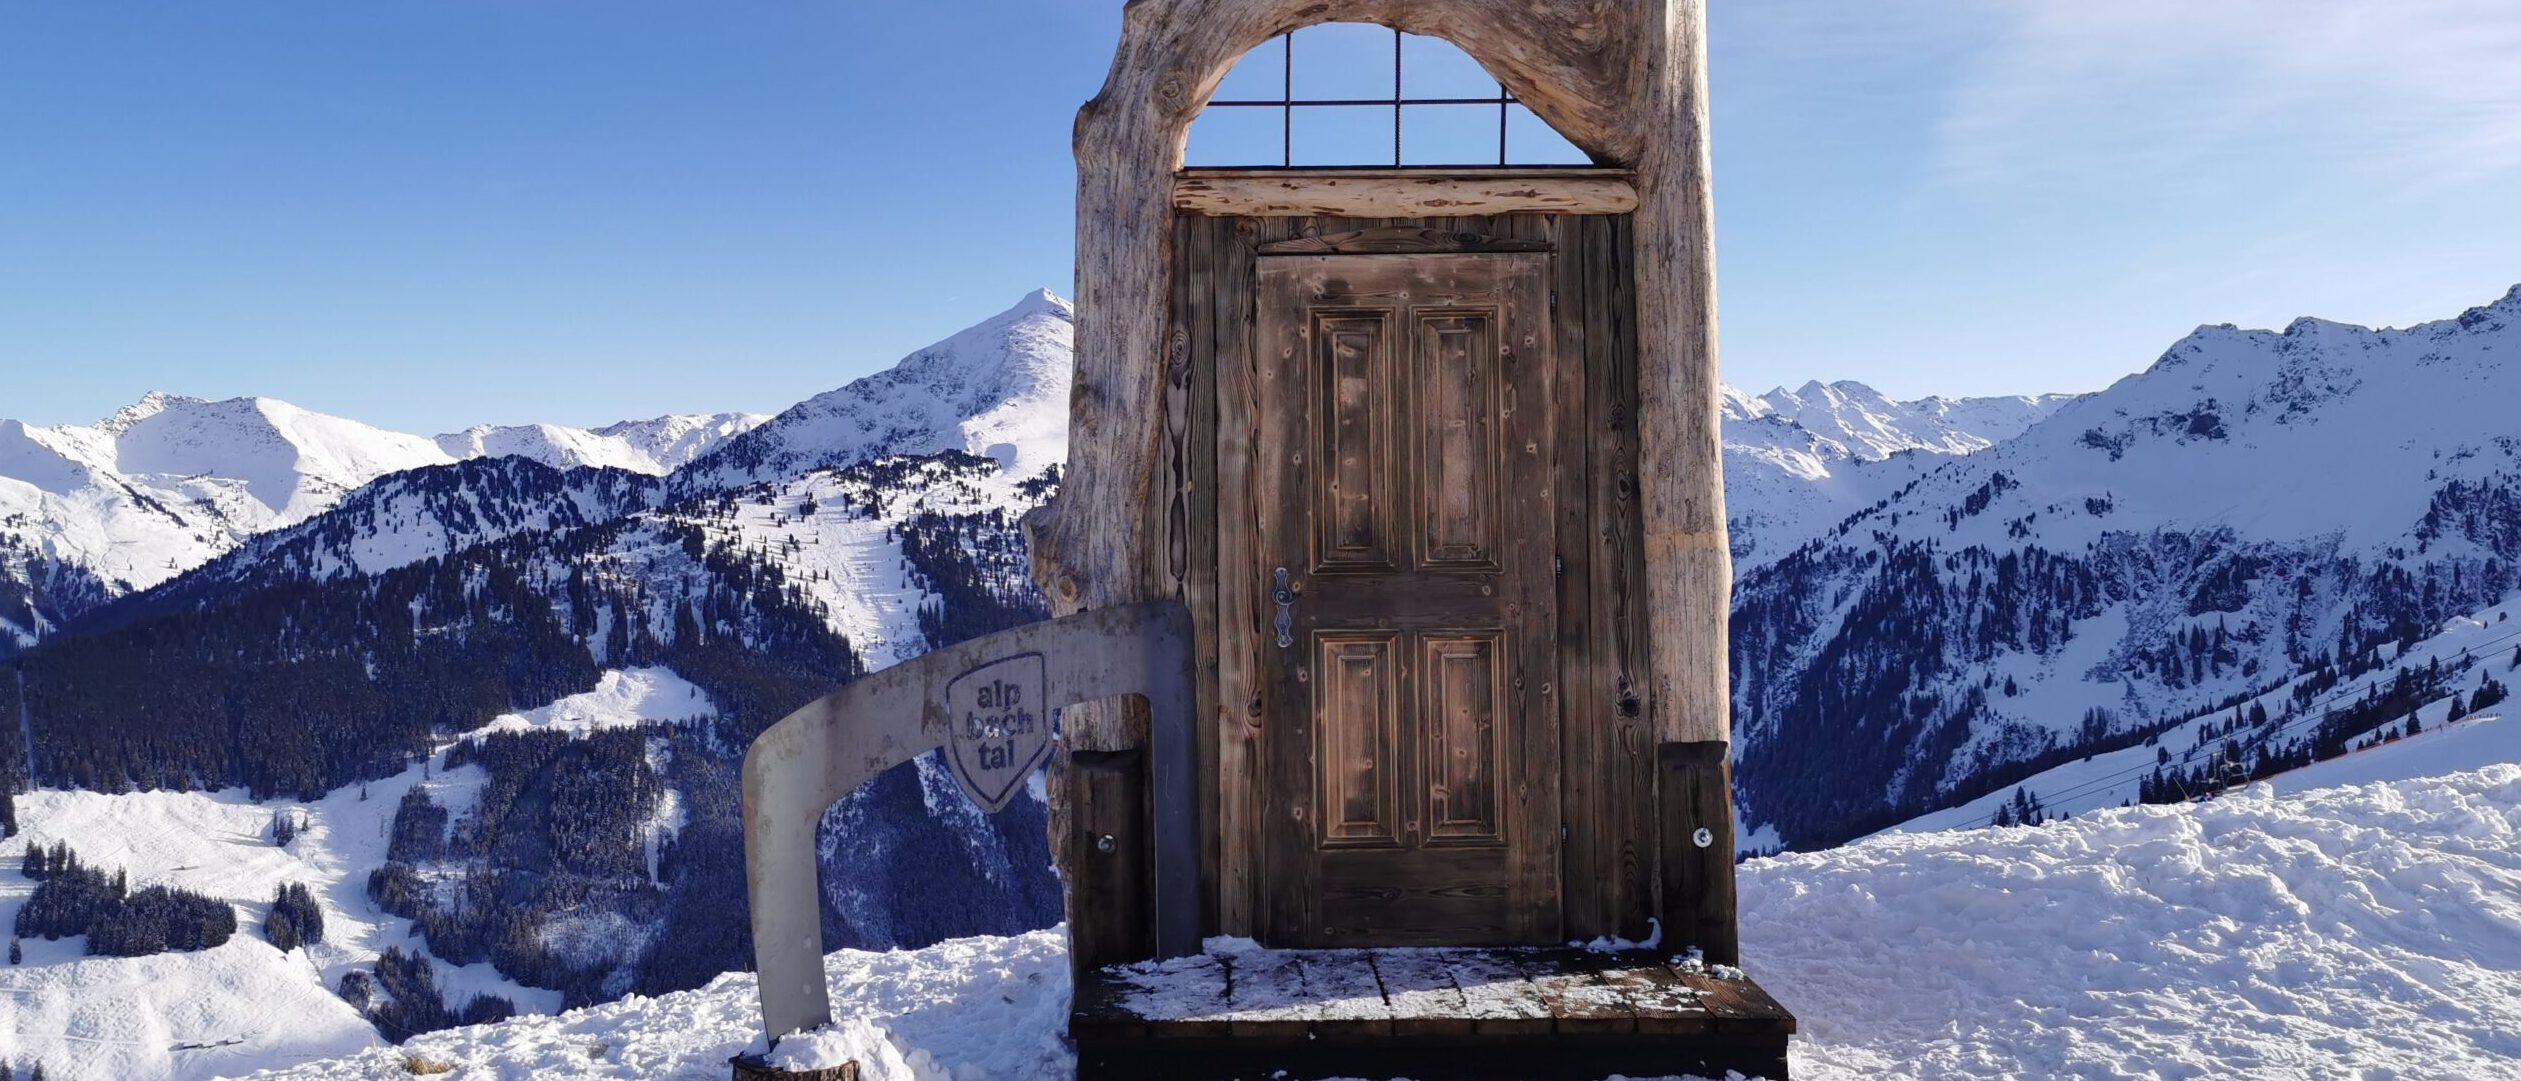 Selfie-Magnet im Ski Juwel: Diese Türe sorgt für Klicks